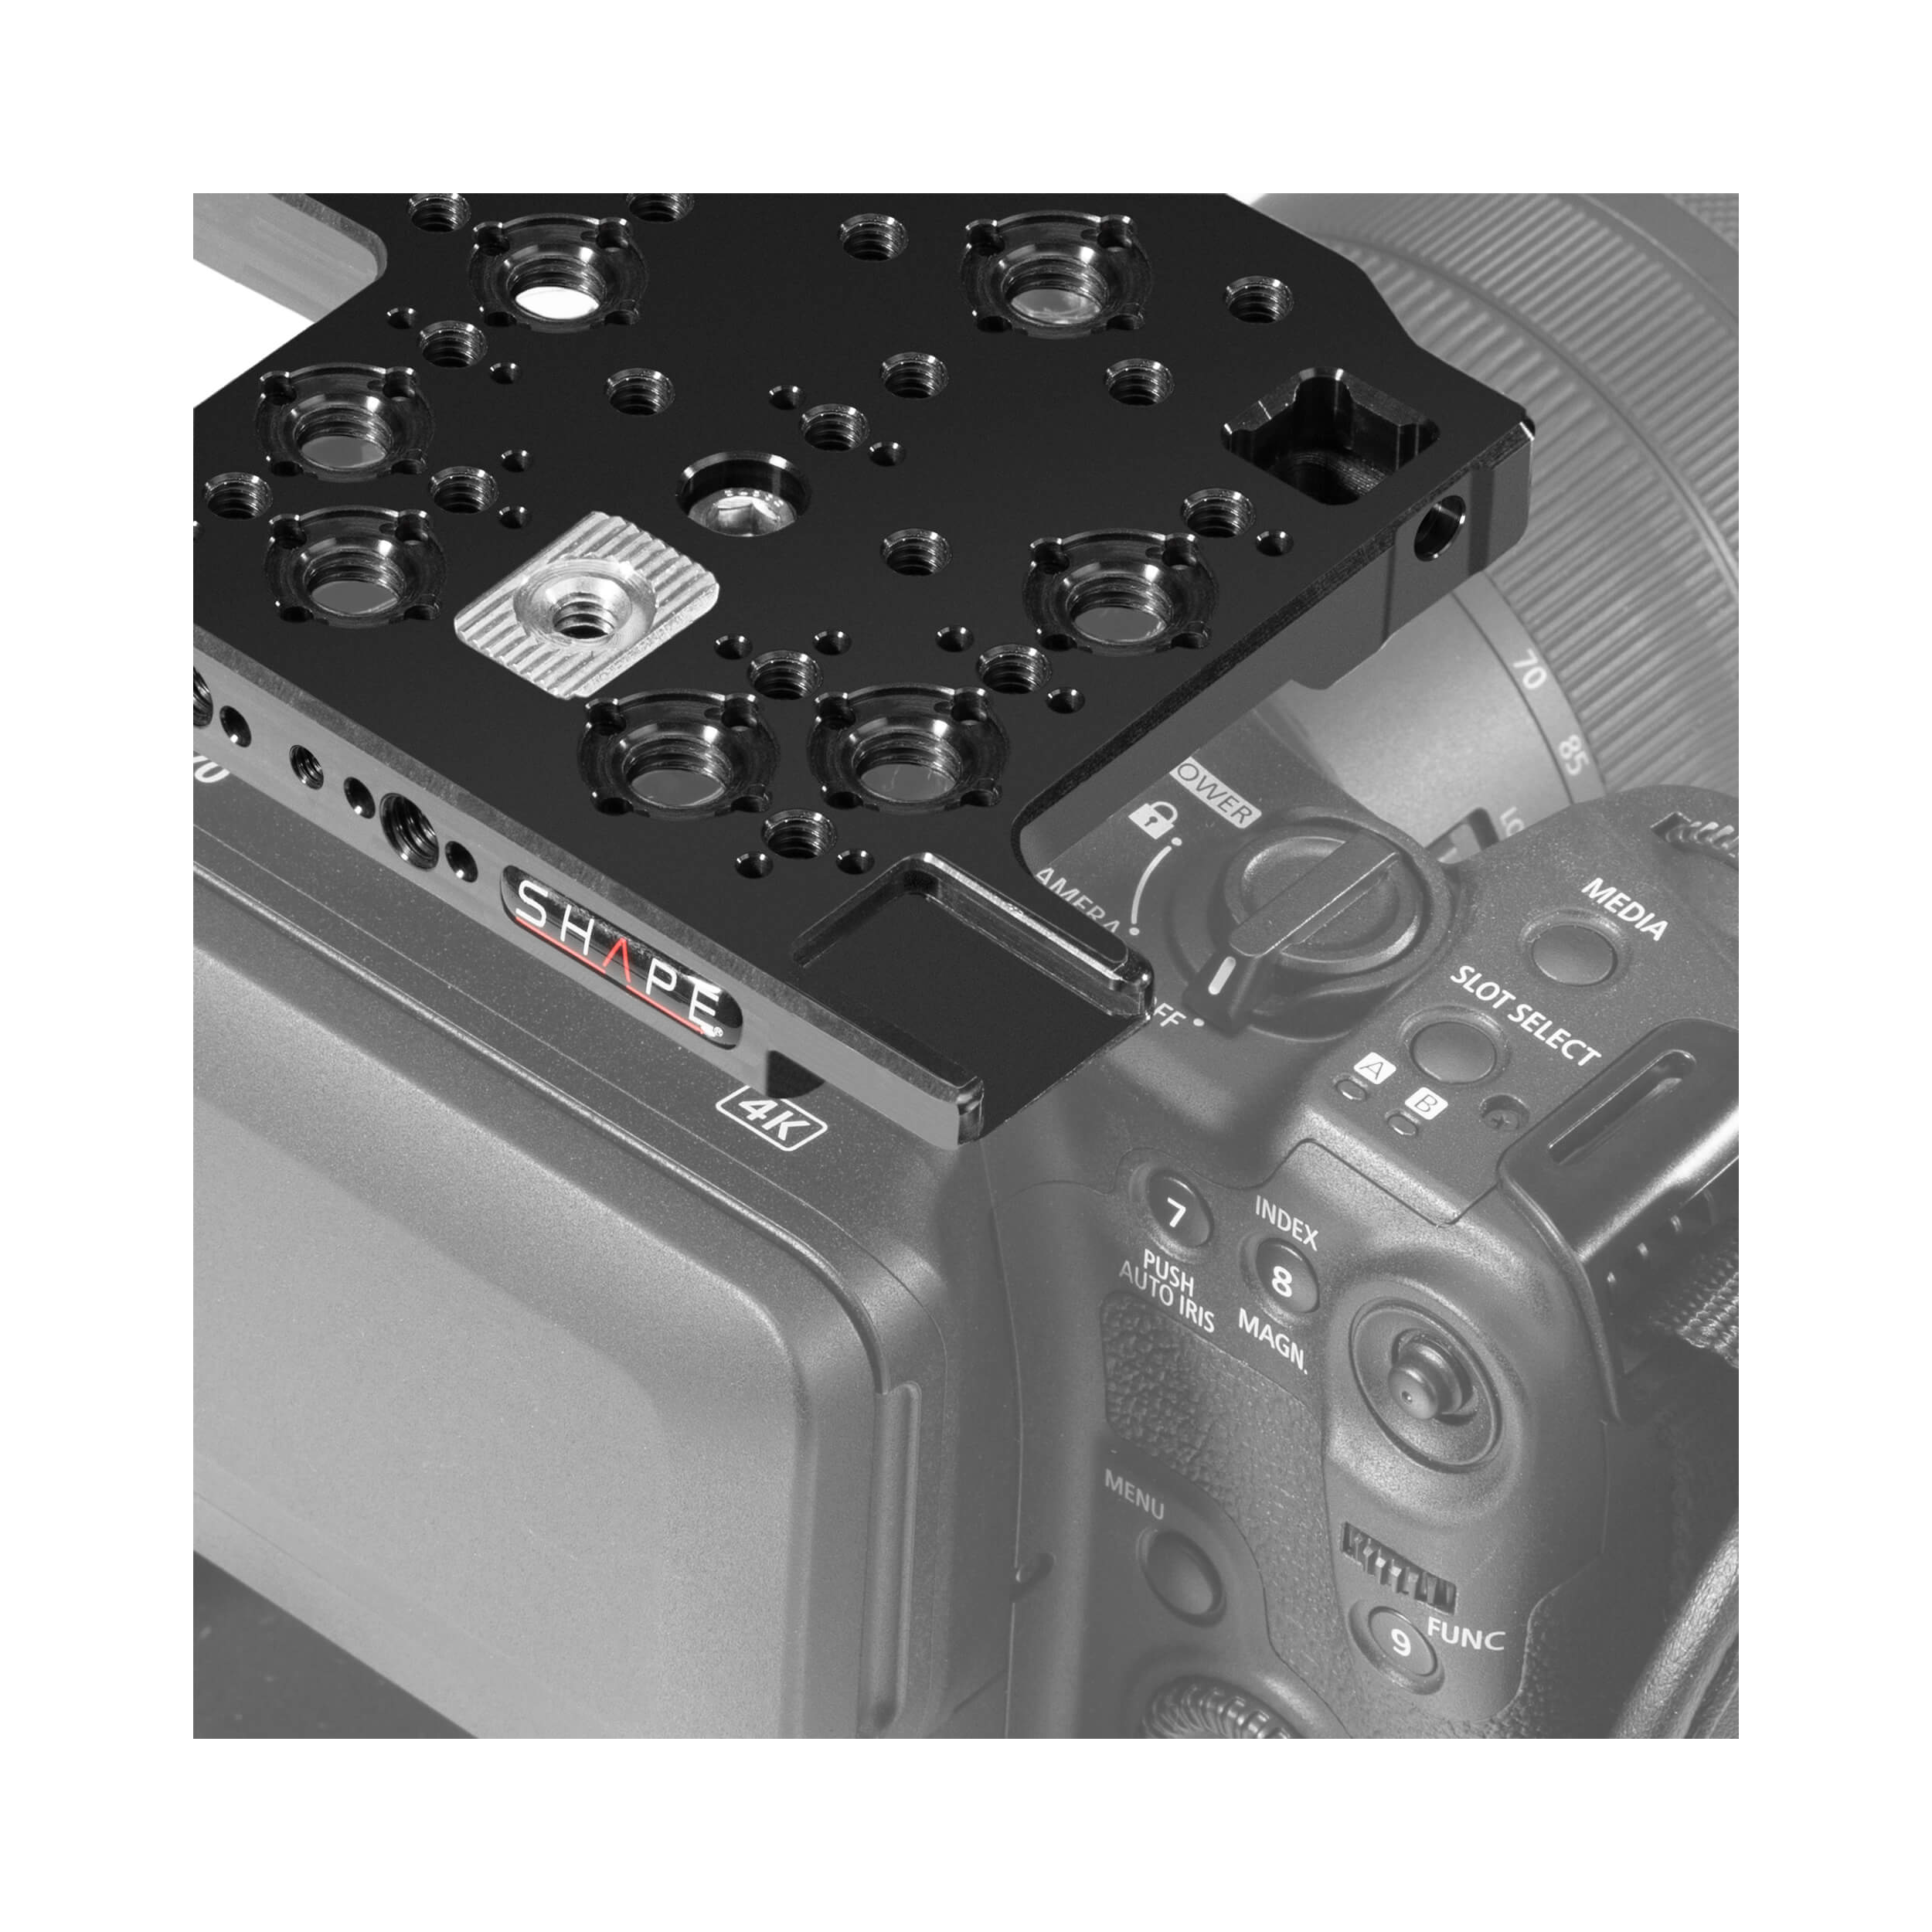 Forme Canon C70 CAME CAME CAGE SHAPHER RIGHT AVEC BOX MATTE ET SUIVANT FOCUS